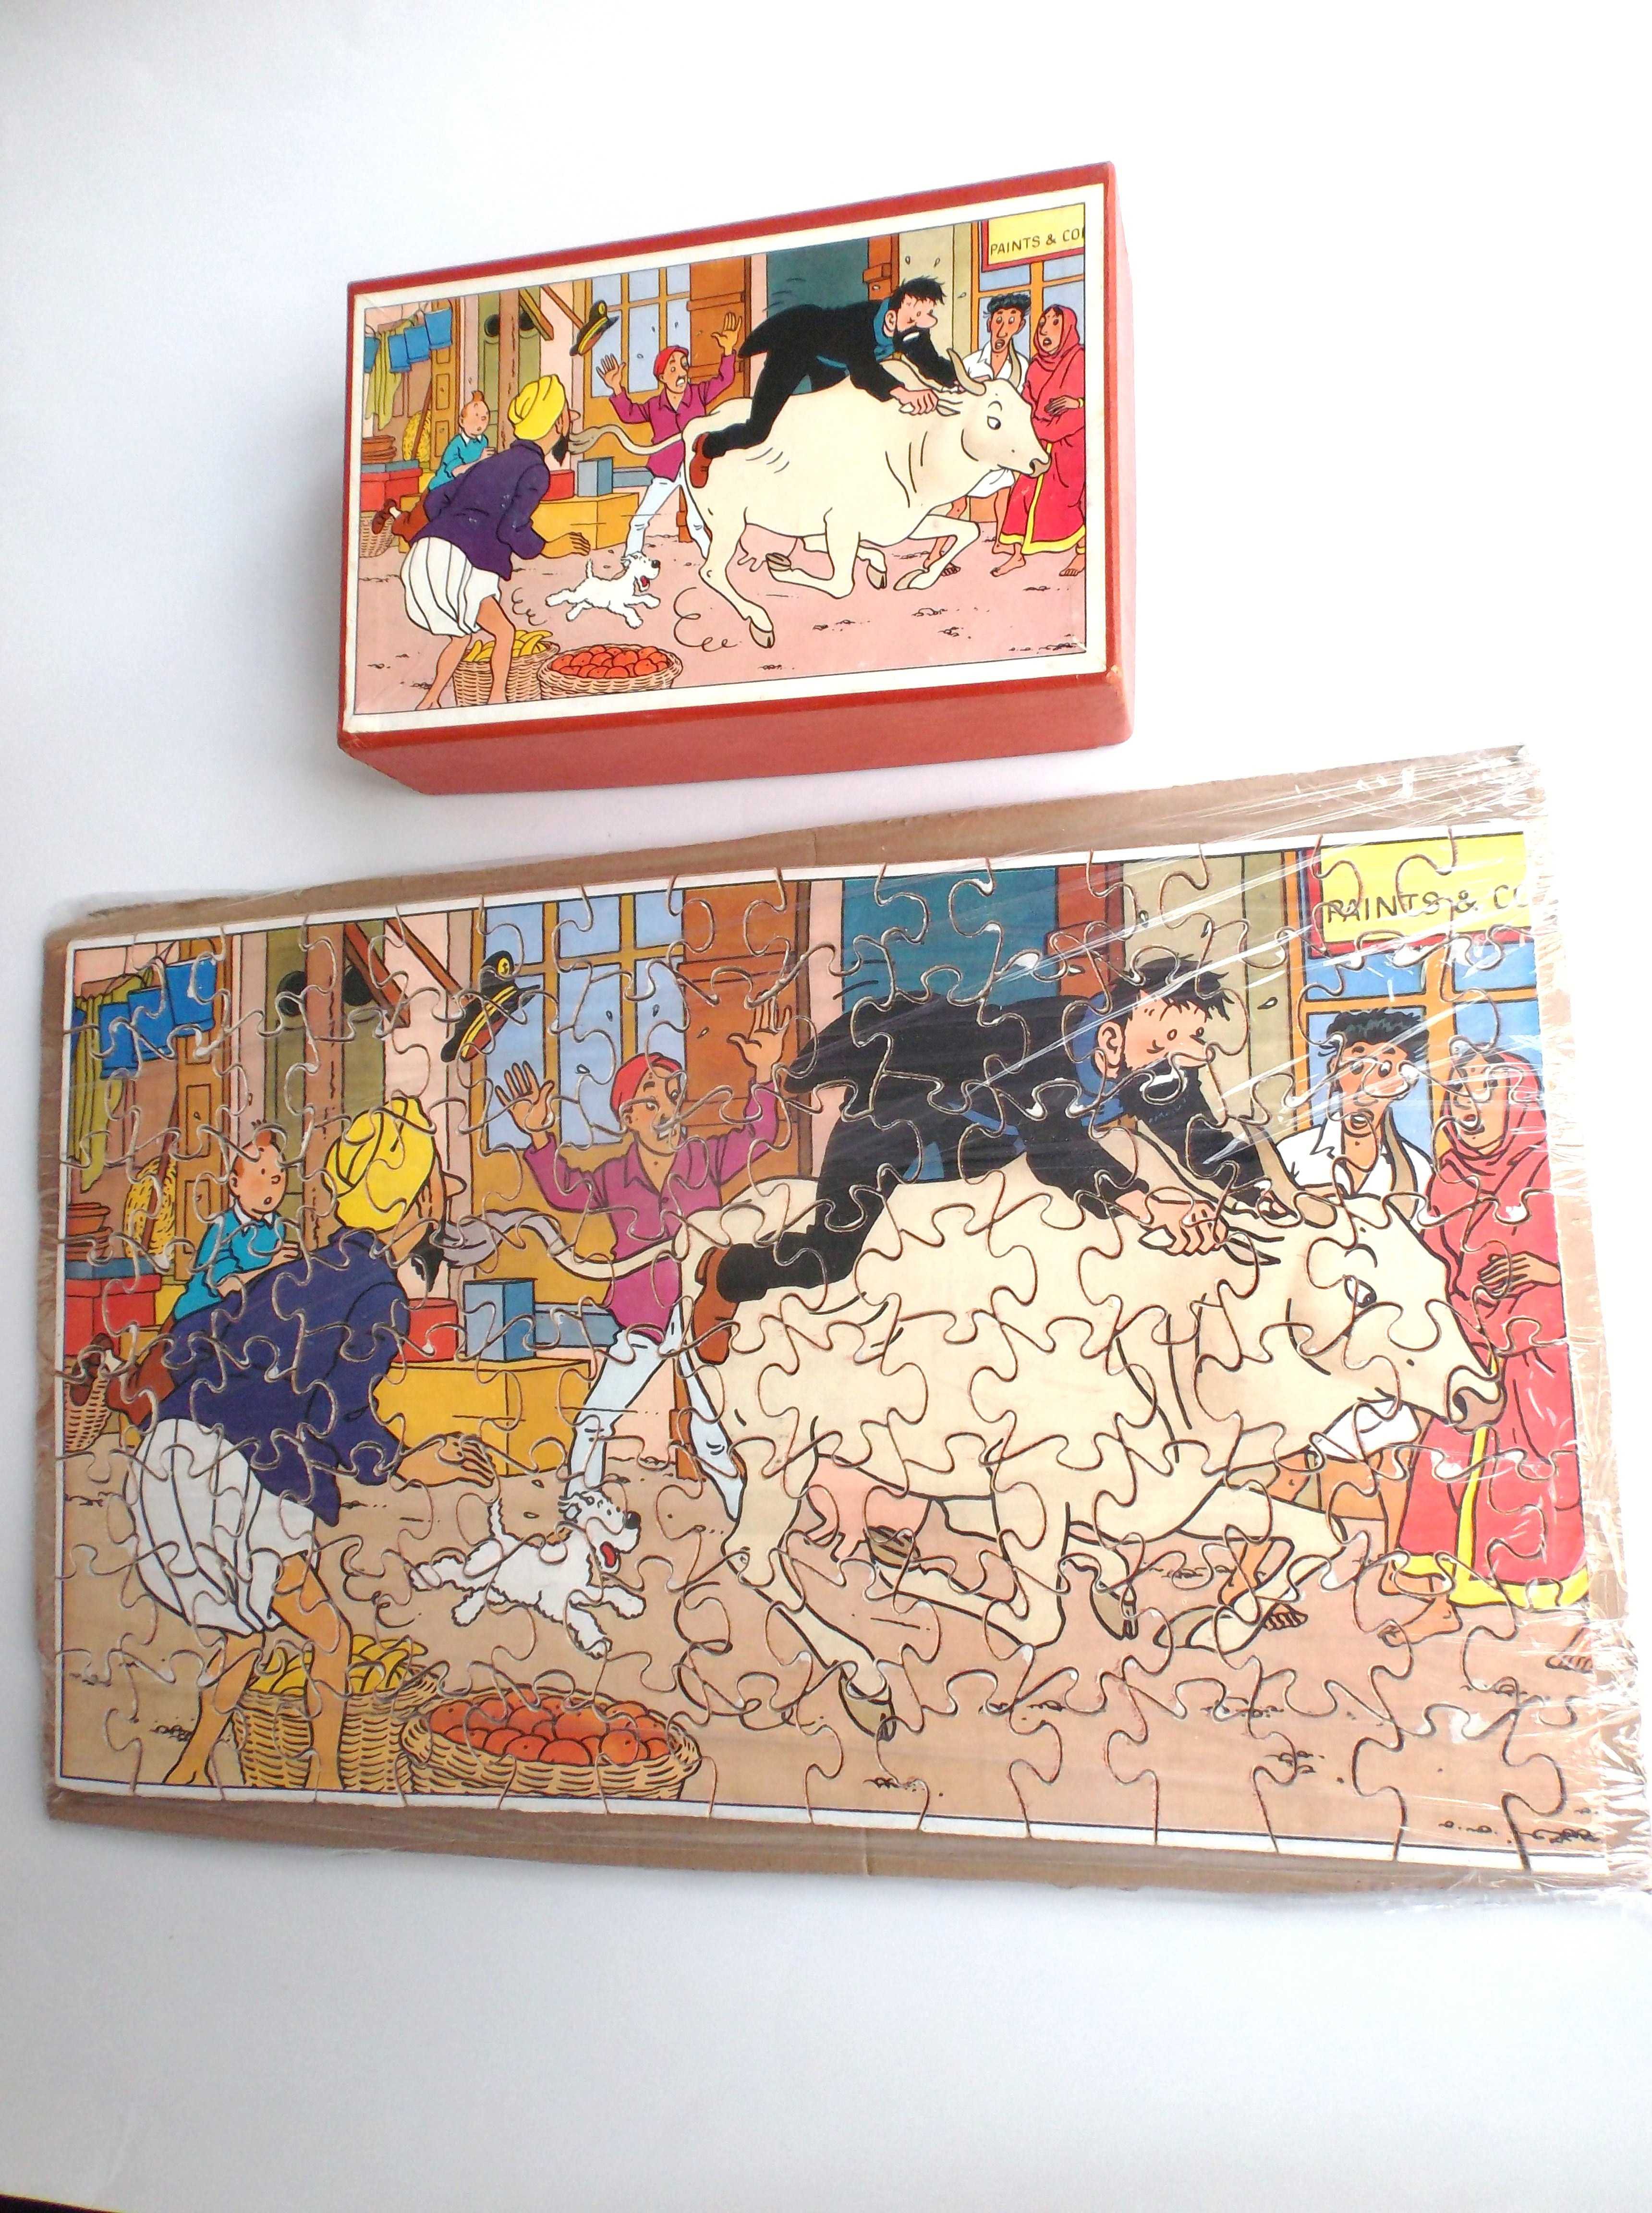 Puzzle en bois Tintin N°4 Le secret de la licorne TBE incomplet - Rue du  Labrador